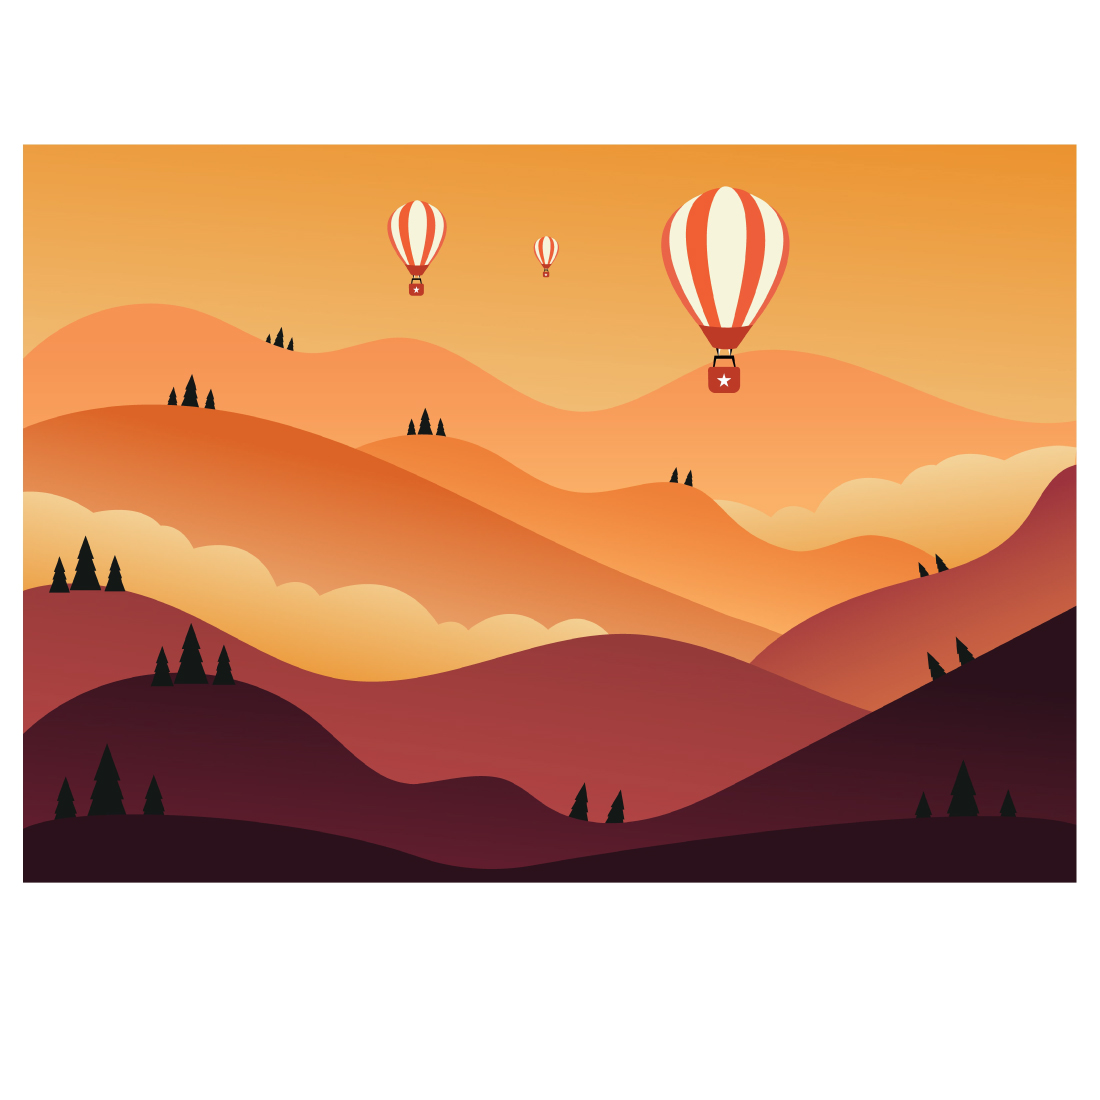 mountain illustration with hot air balloon min 25